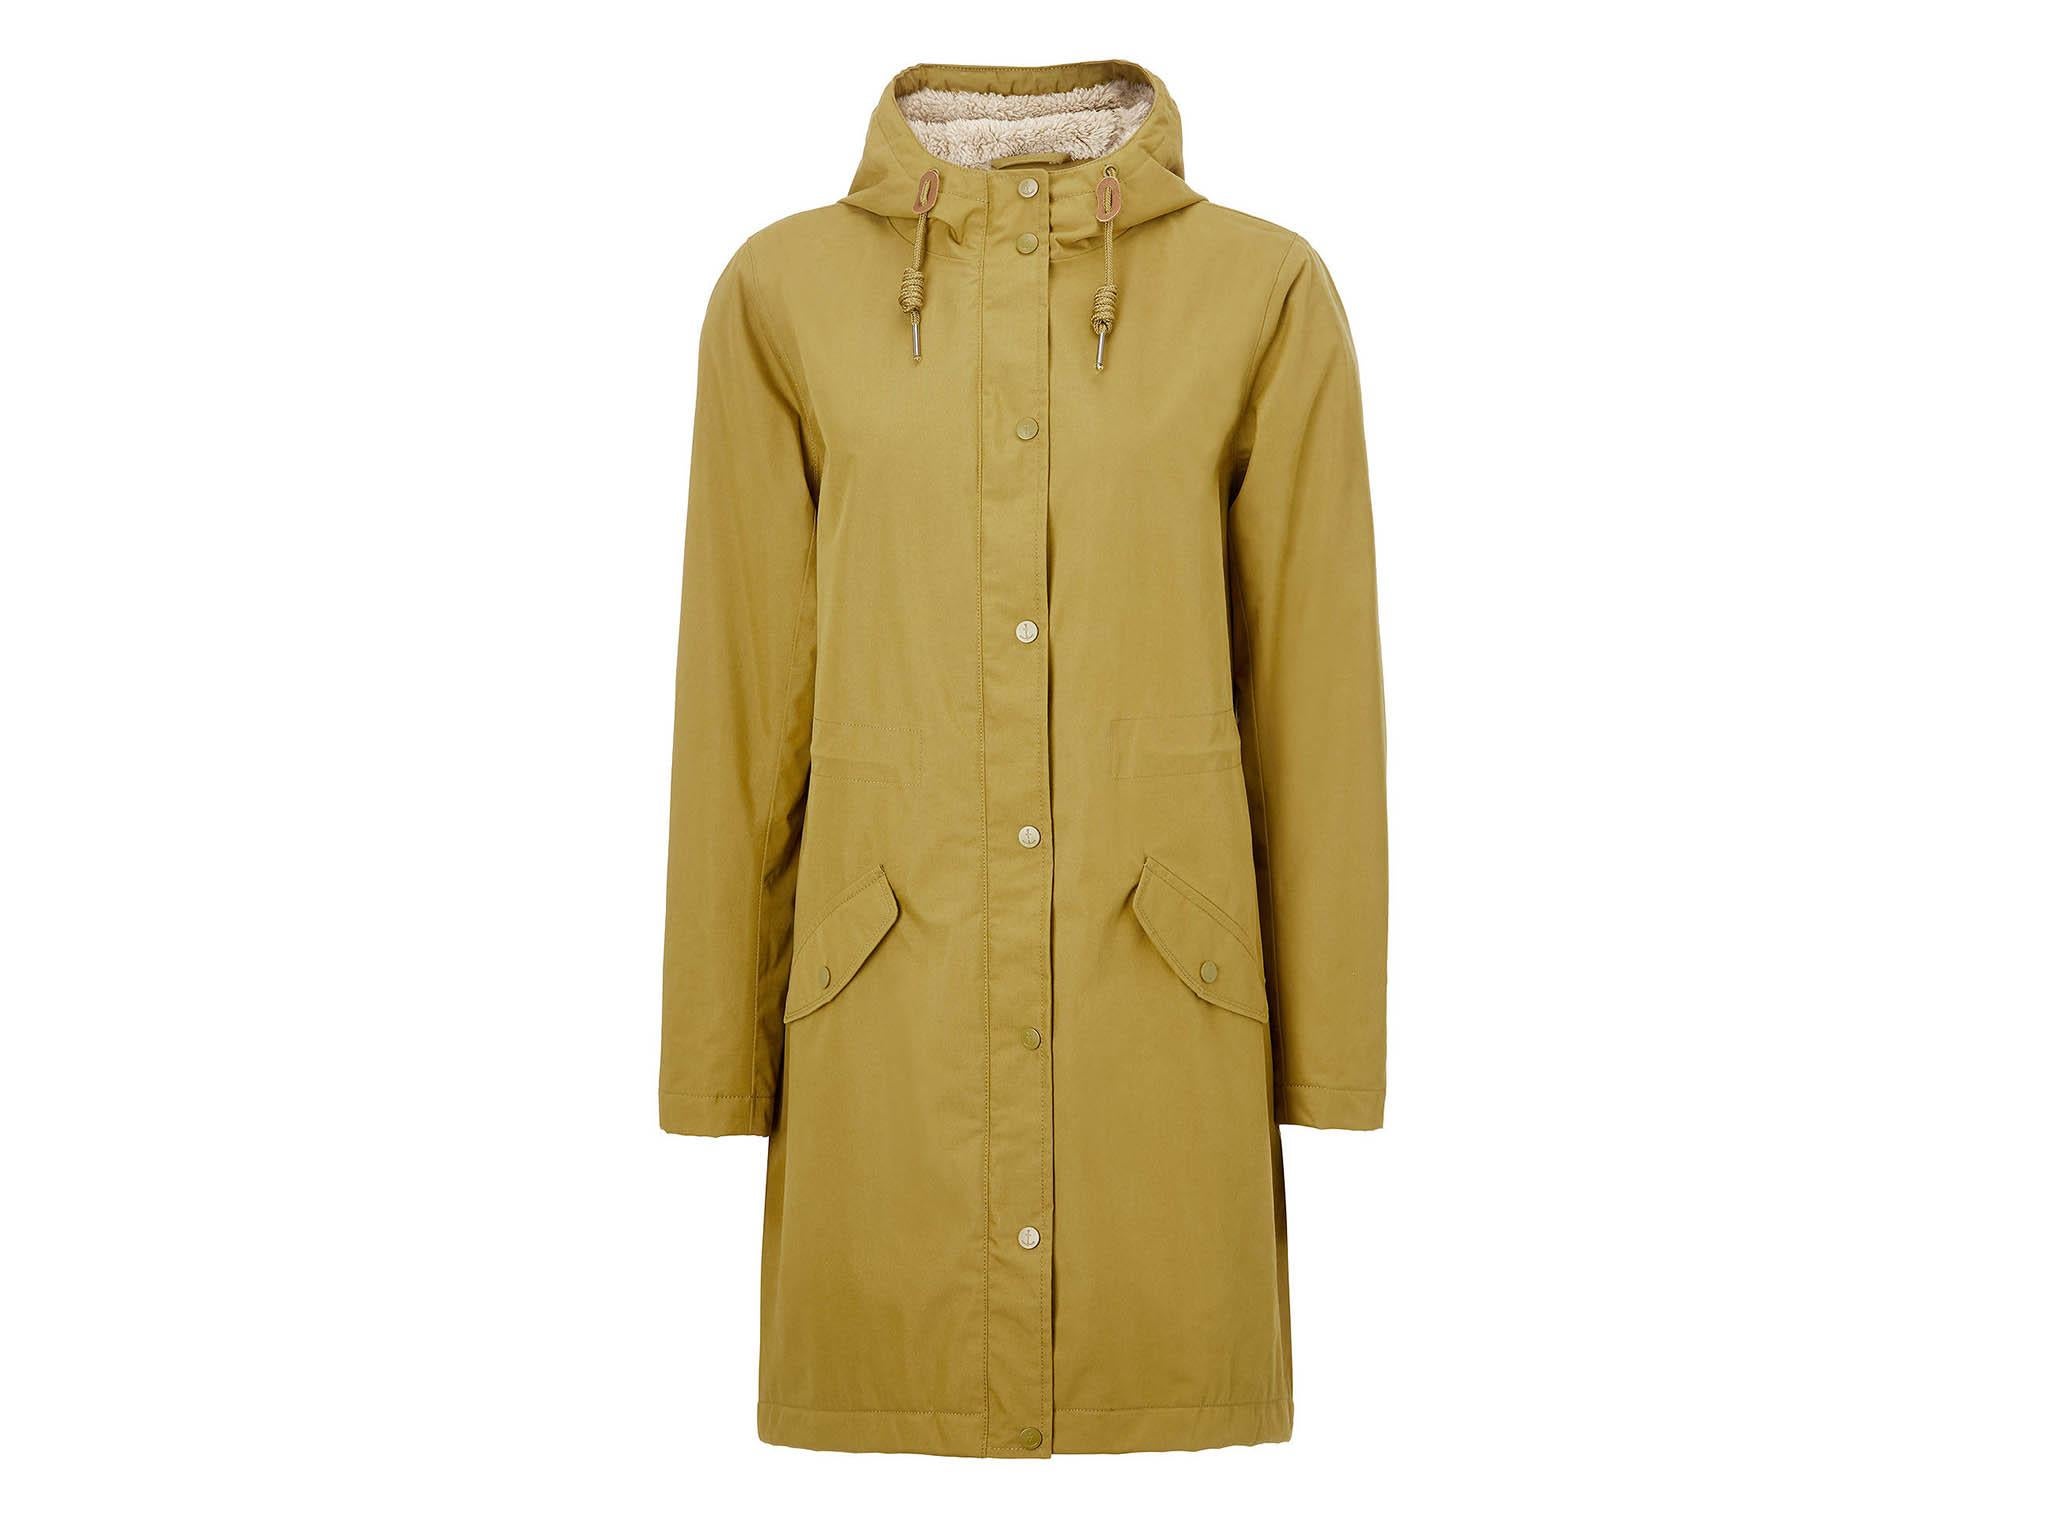 Best waterproof jackets for women to 